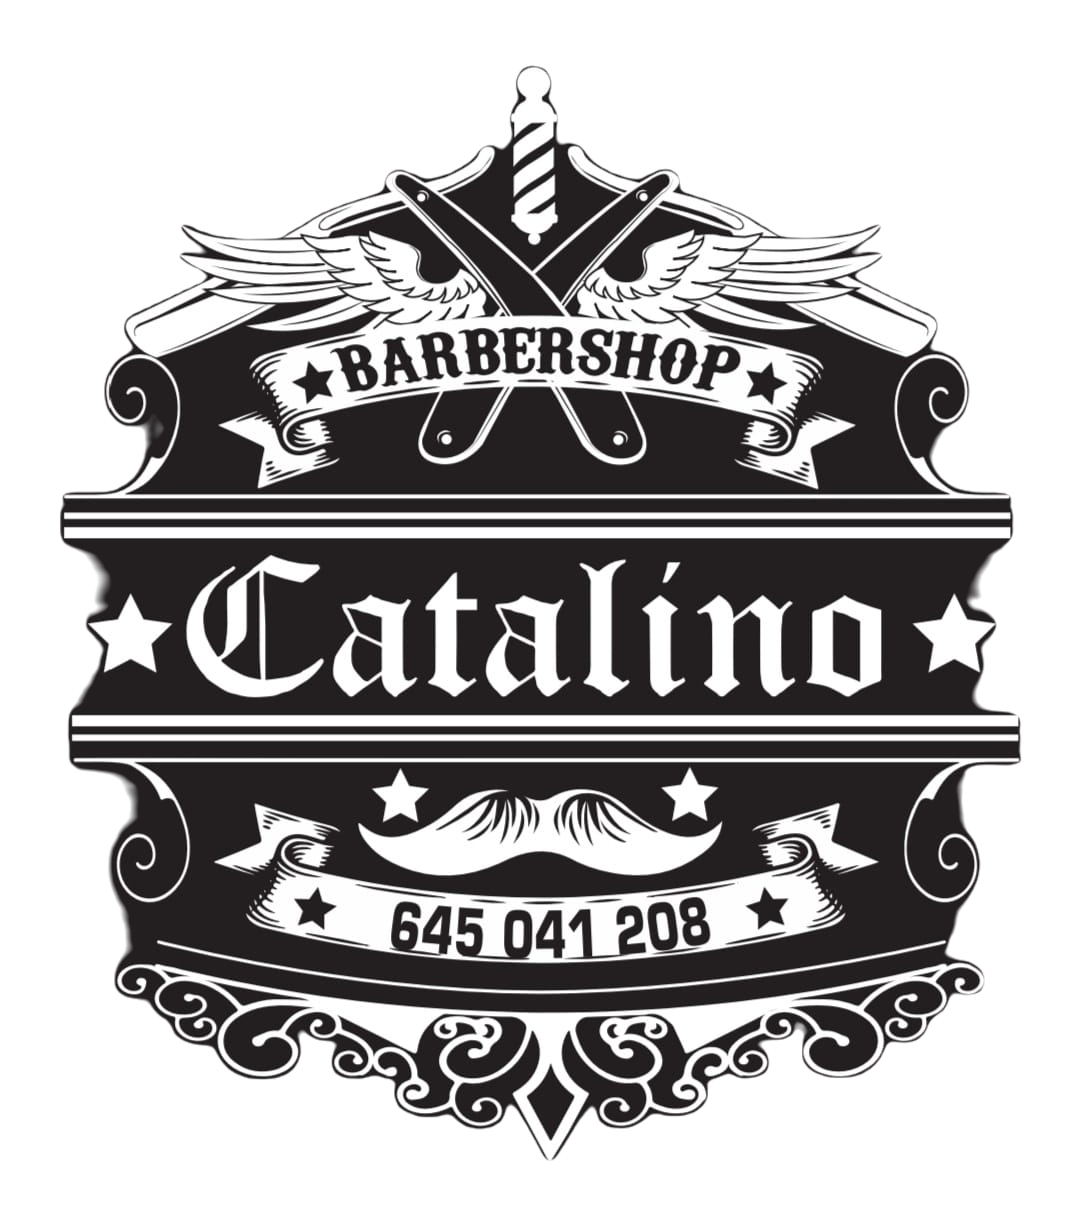 Catalino Barbershop